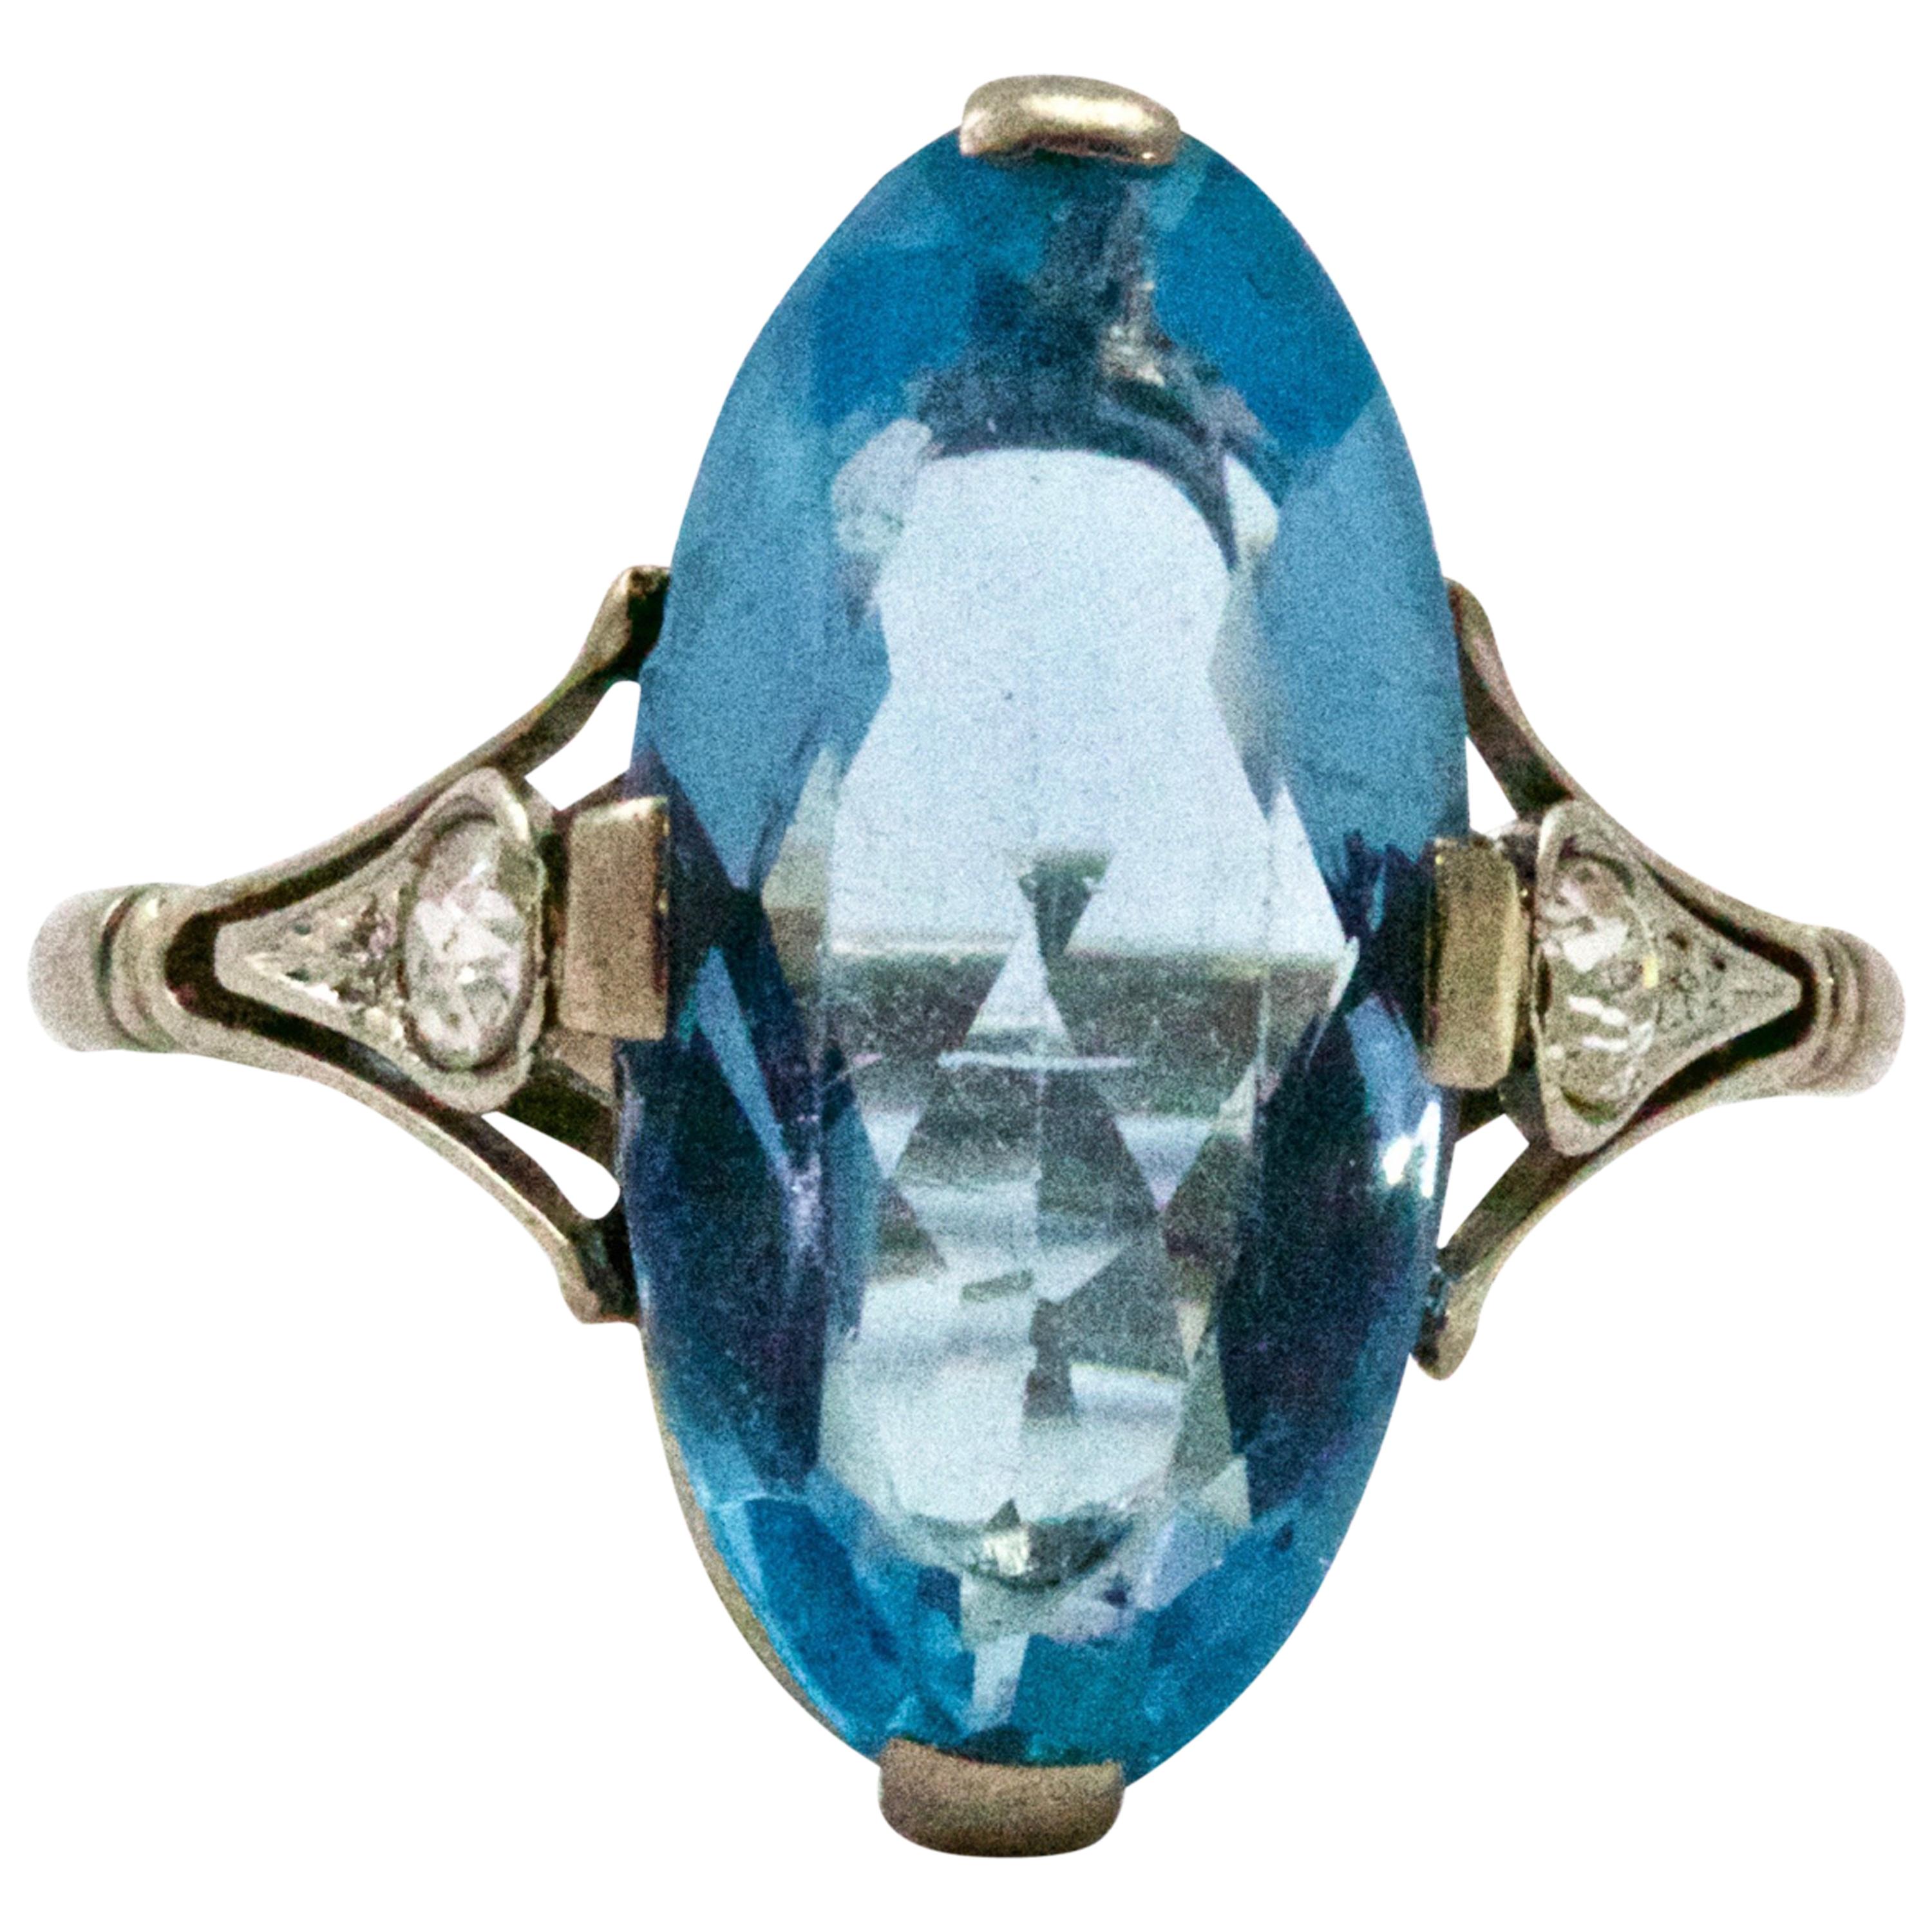 Art Deco Platinum Aquamarine and Diamond Ring